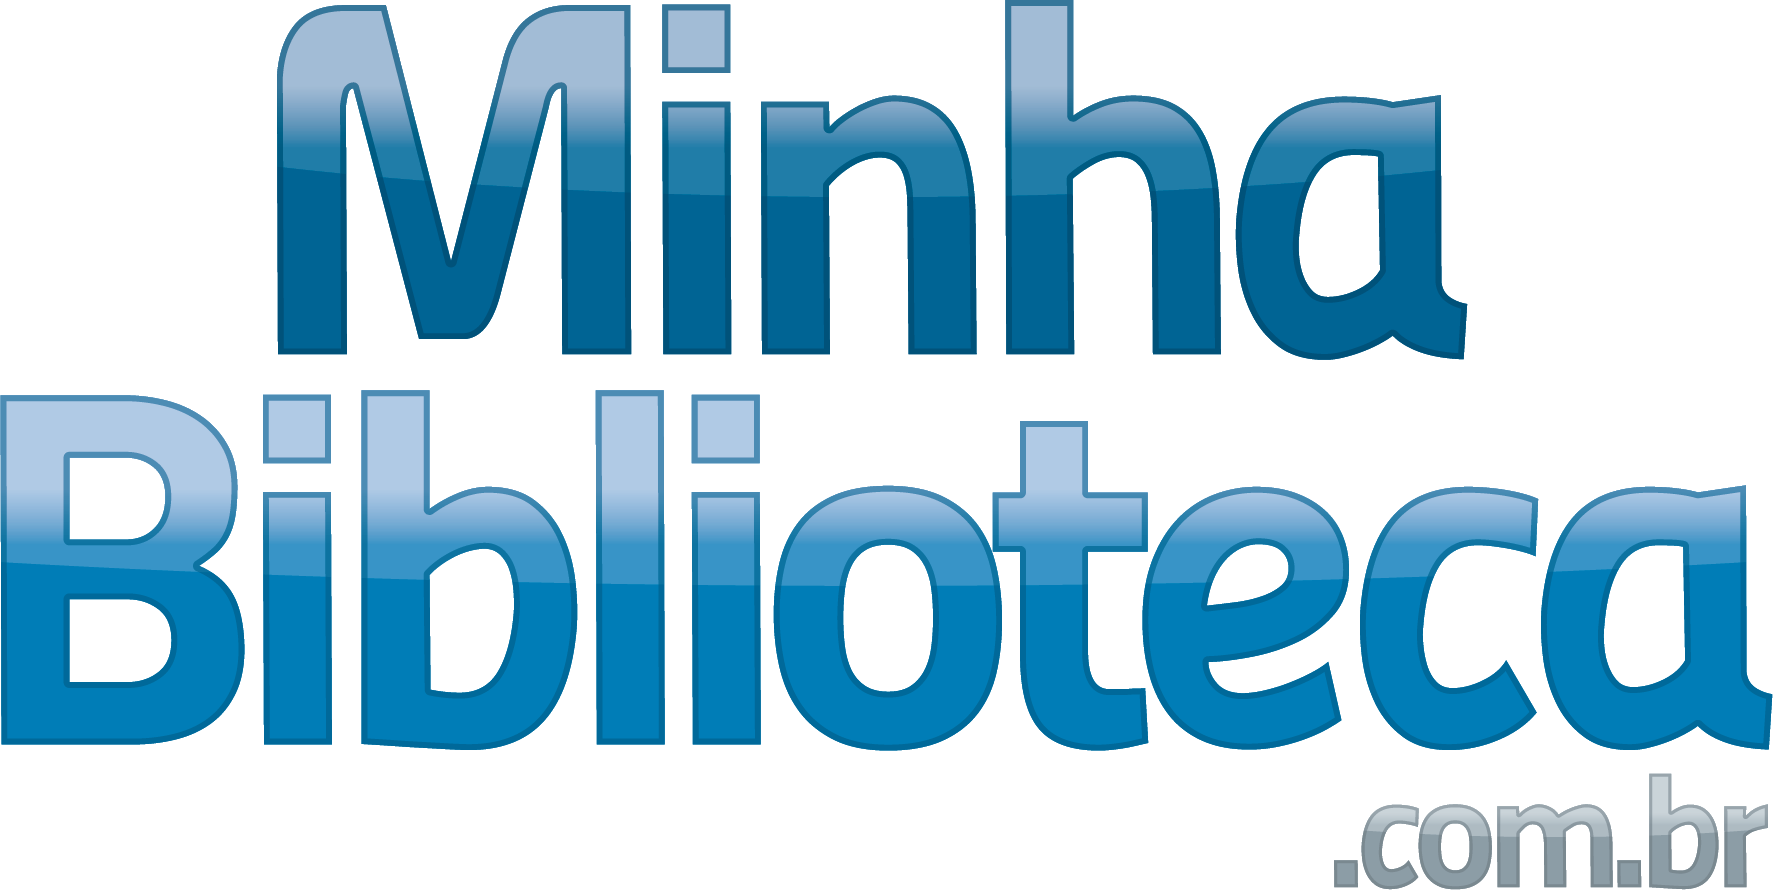 Logotipo da biblioteca digital, onde lê-se: "Minha Biblioteca", em letras azuis.